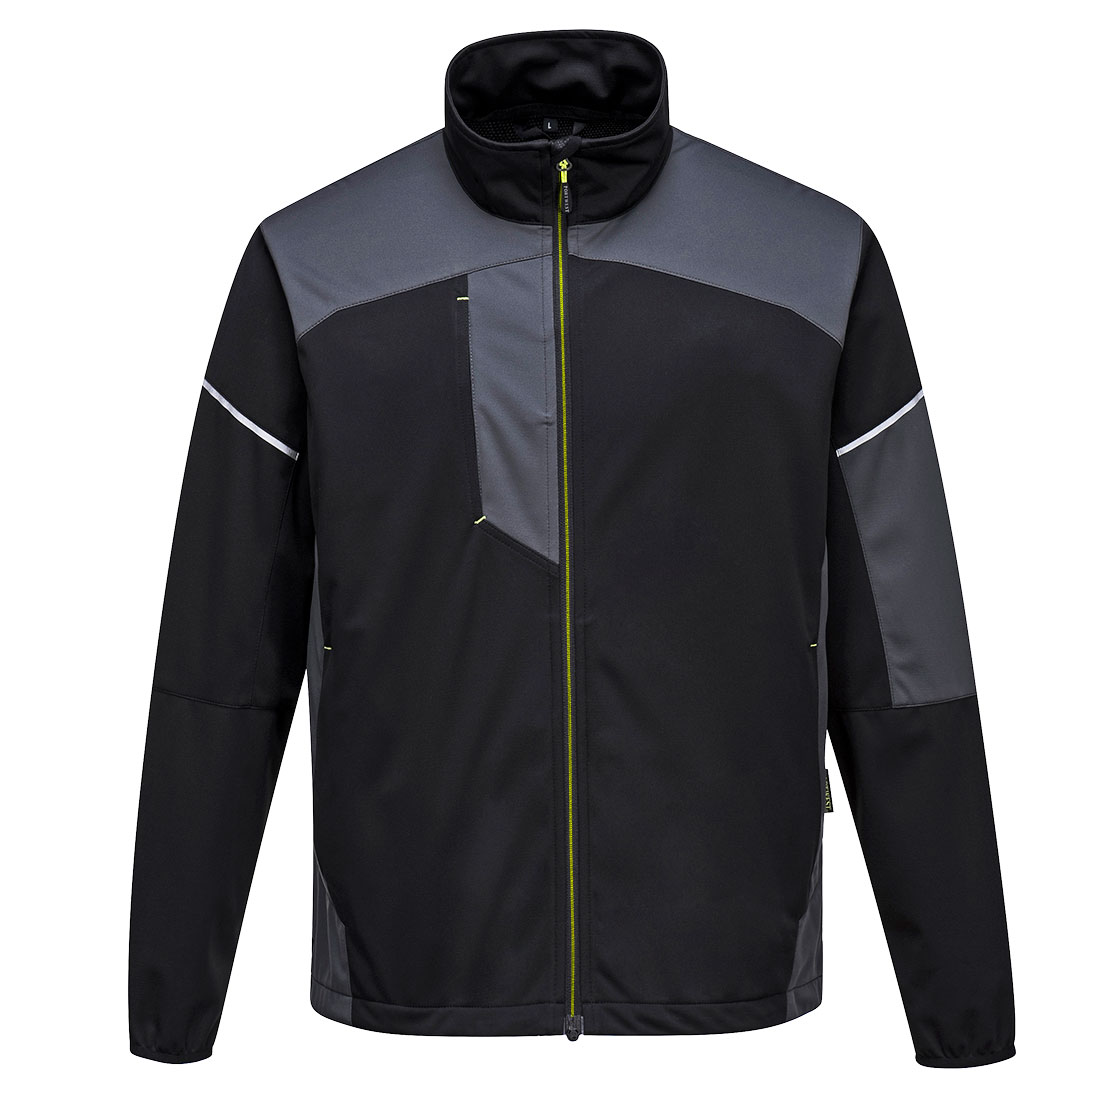 PW3 Flex Shell Jacket - Black/Zoom Grey